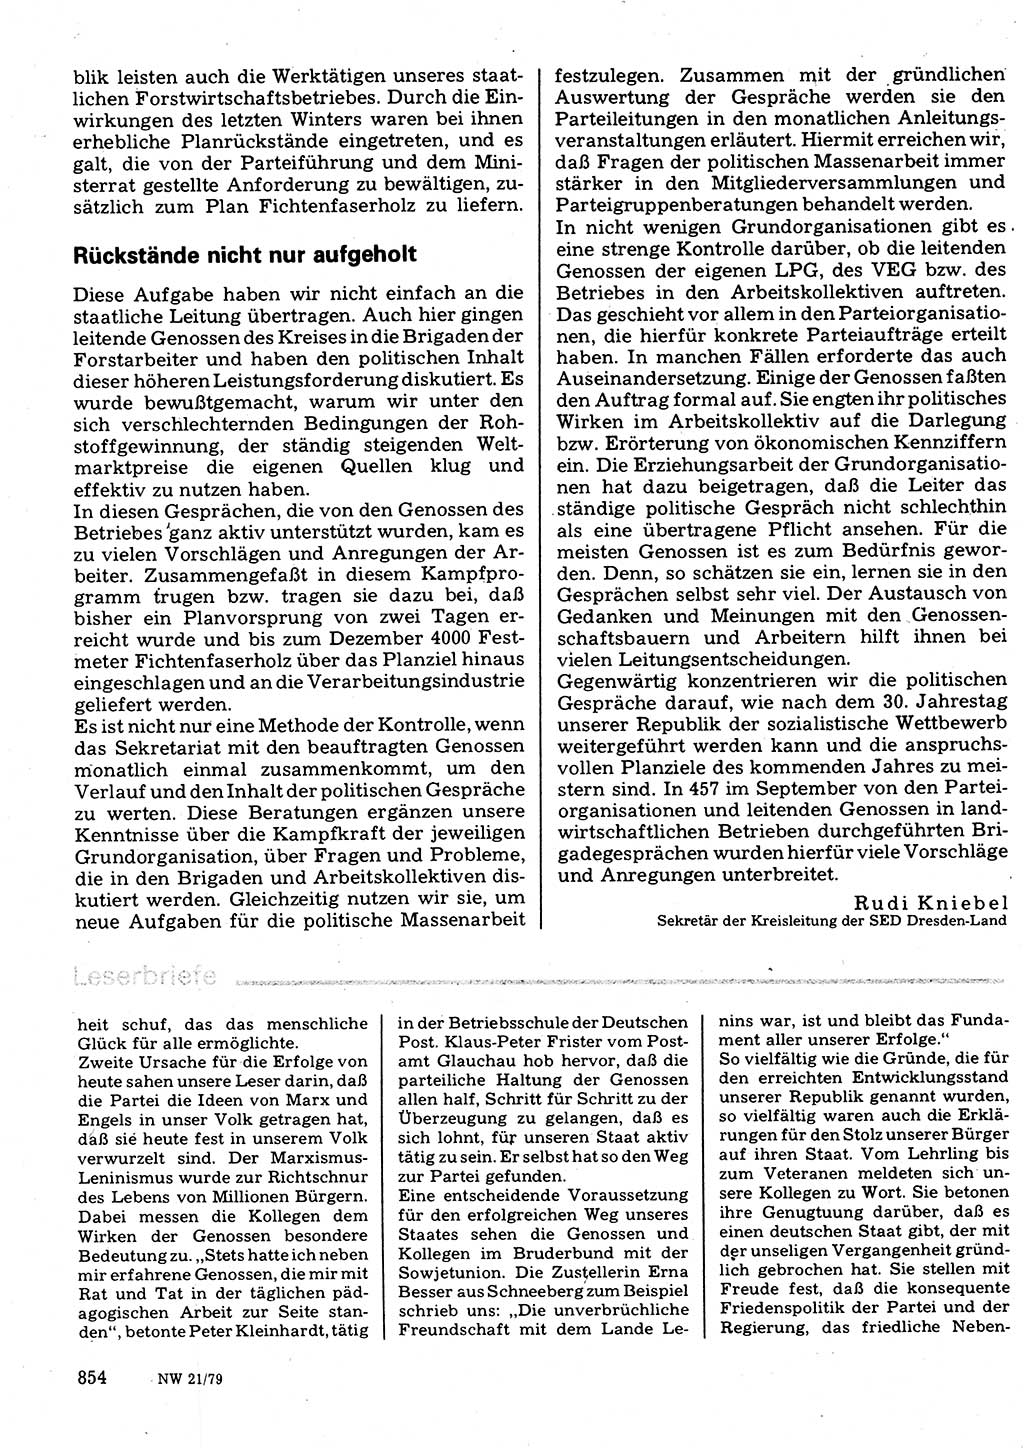 Neuer Weg (NW), Organ des Zentralkomitees (ZK) der SED (Sozialistische Einheitspartei Deutschlands) für Fragen des Parteilebens, 34. Jahrgang [Deutsche Demokratische Republik (DDR)] 1979, Seite 854 (NW ZK SED DDR 1979, S. 854)